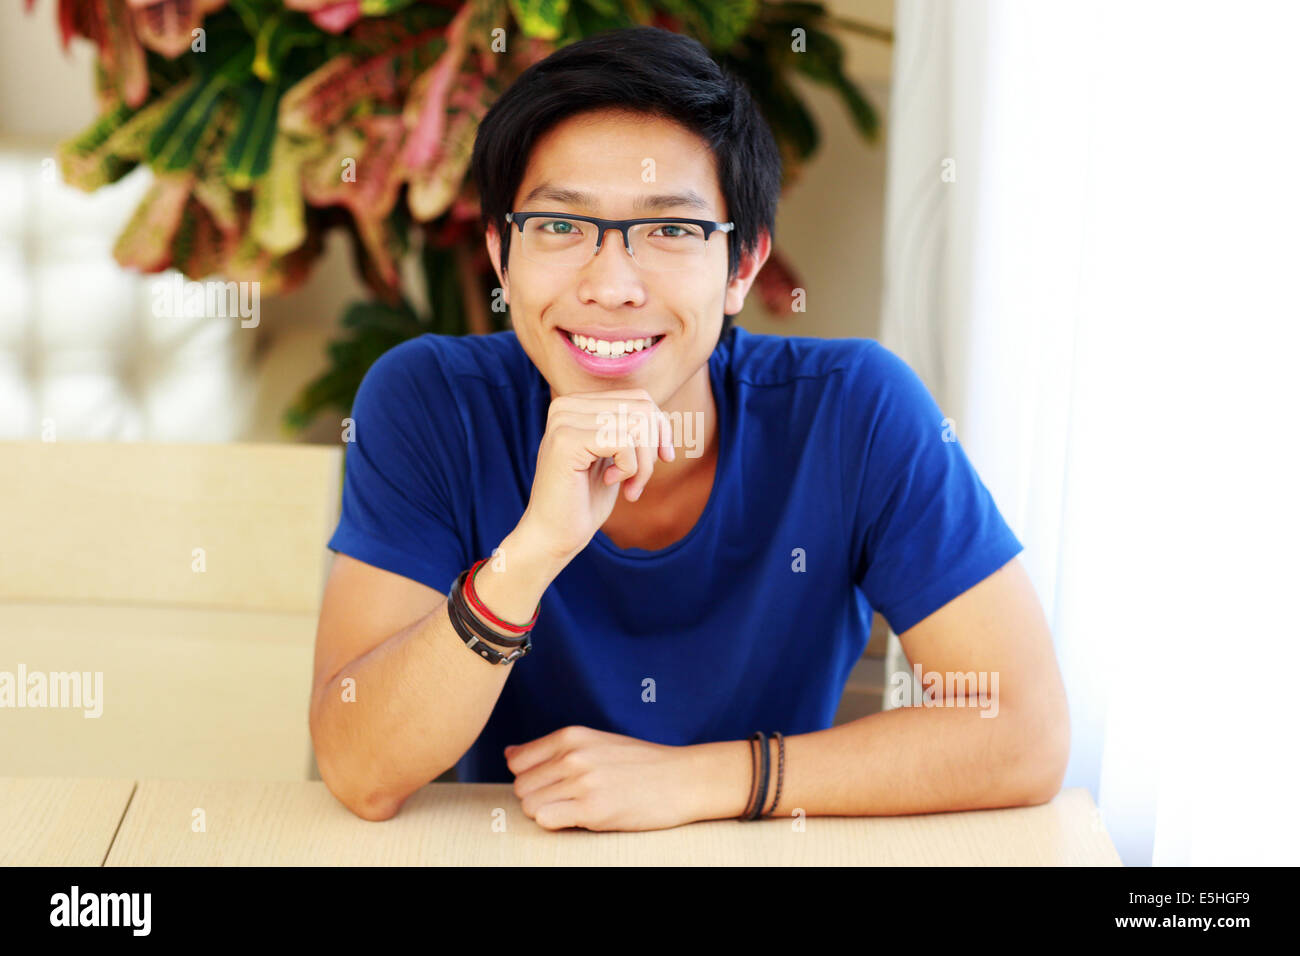 Lächelnde asiatische Mann mit Brille, die am Tisch sitzen Stockfoto